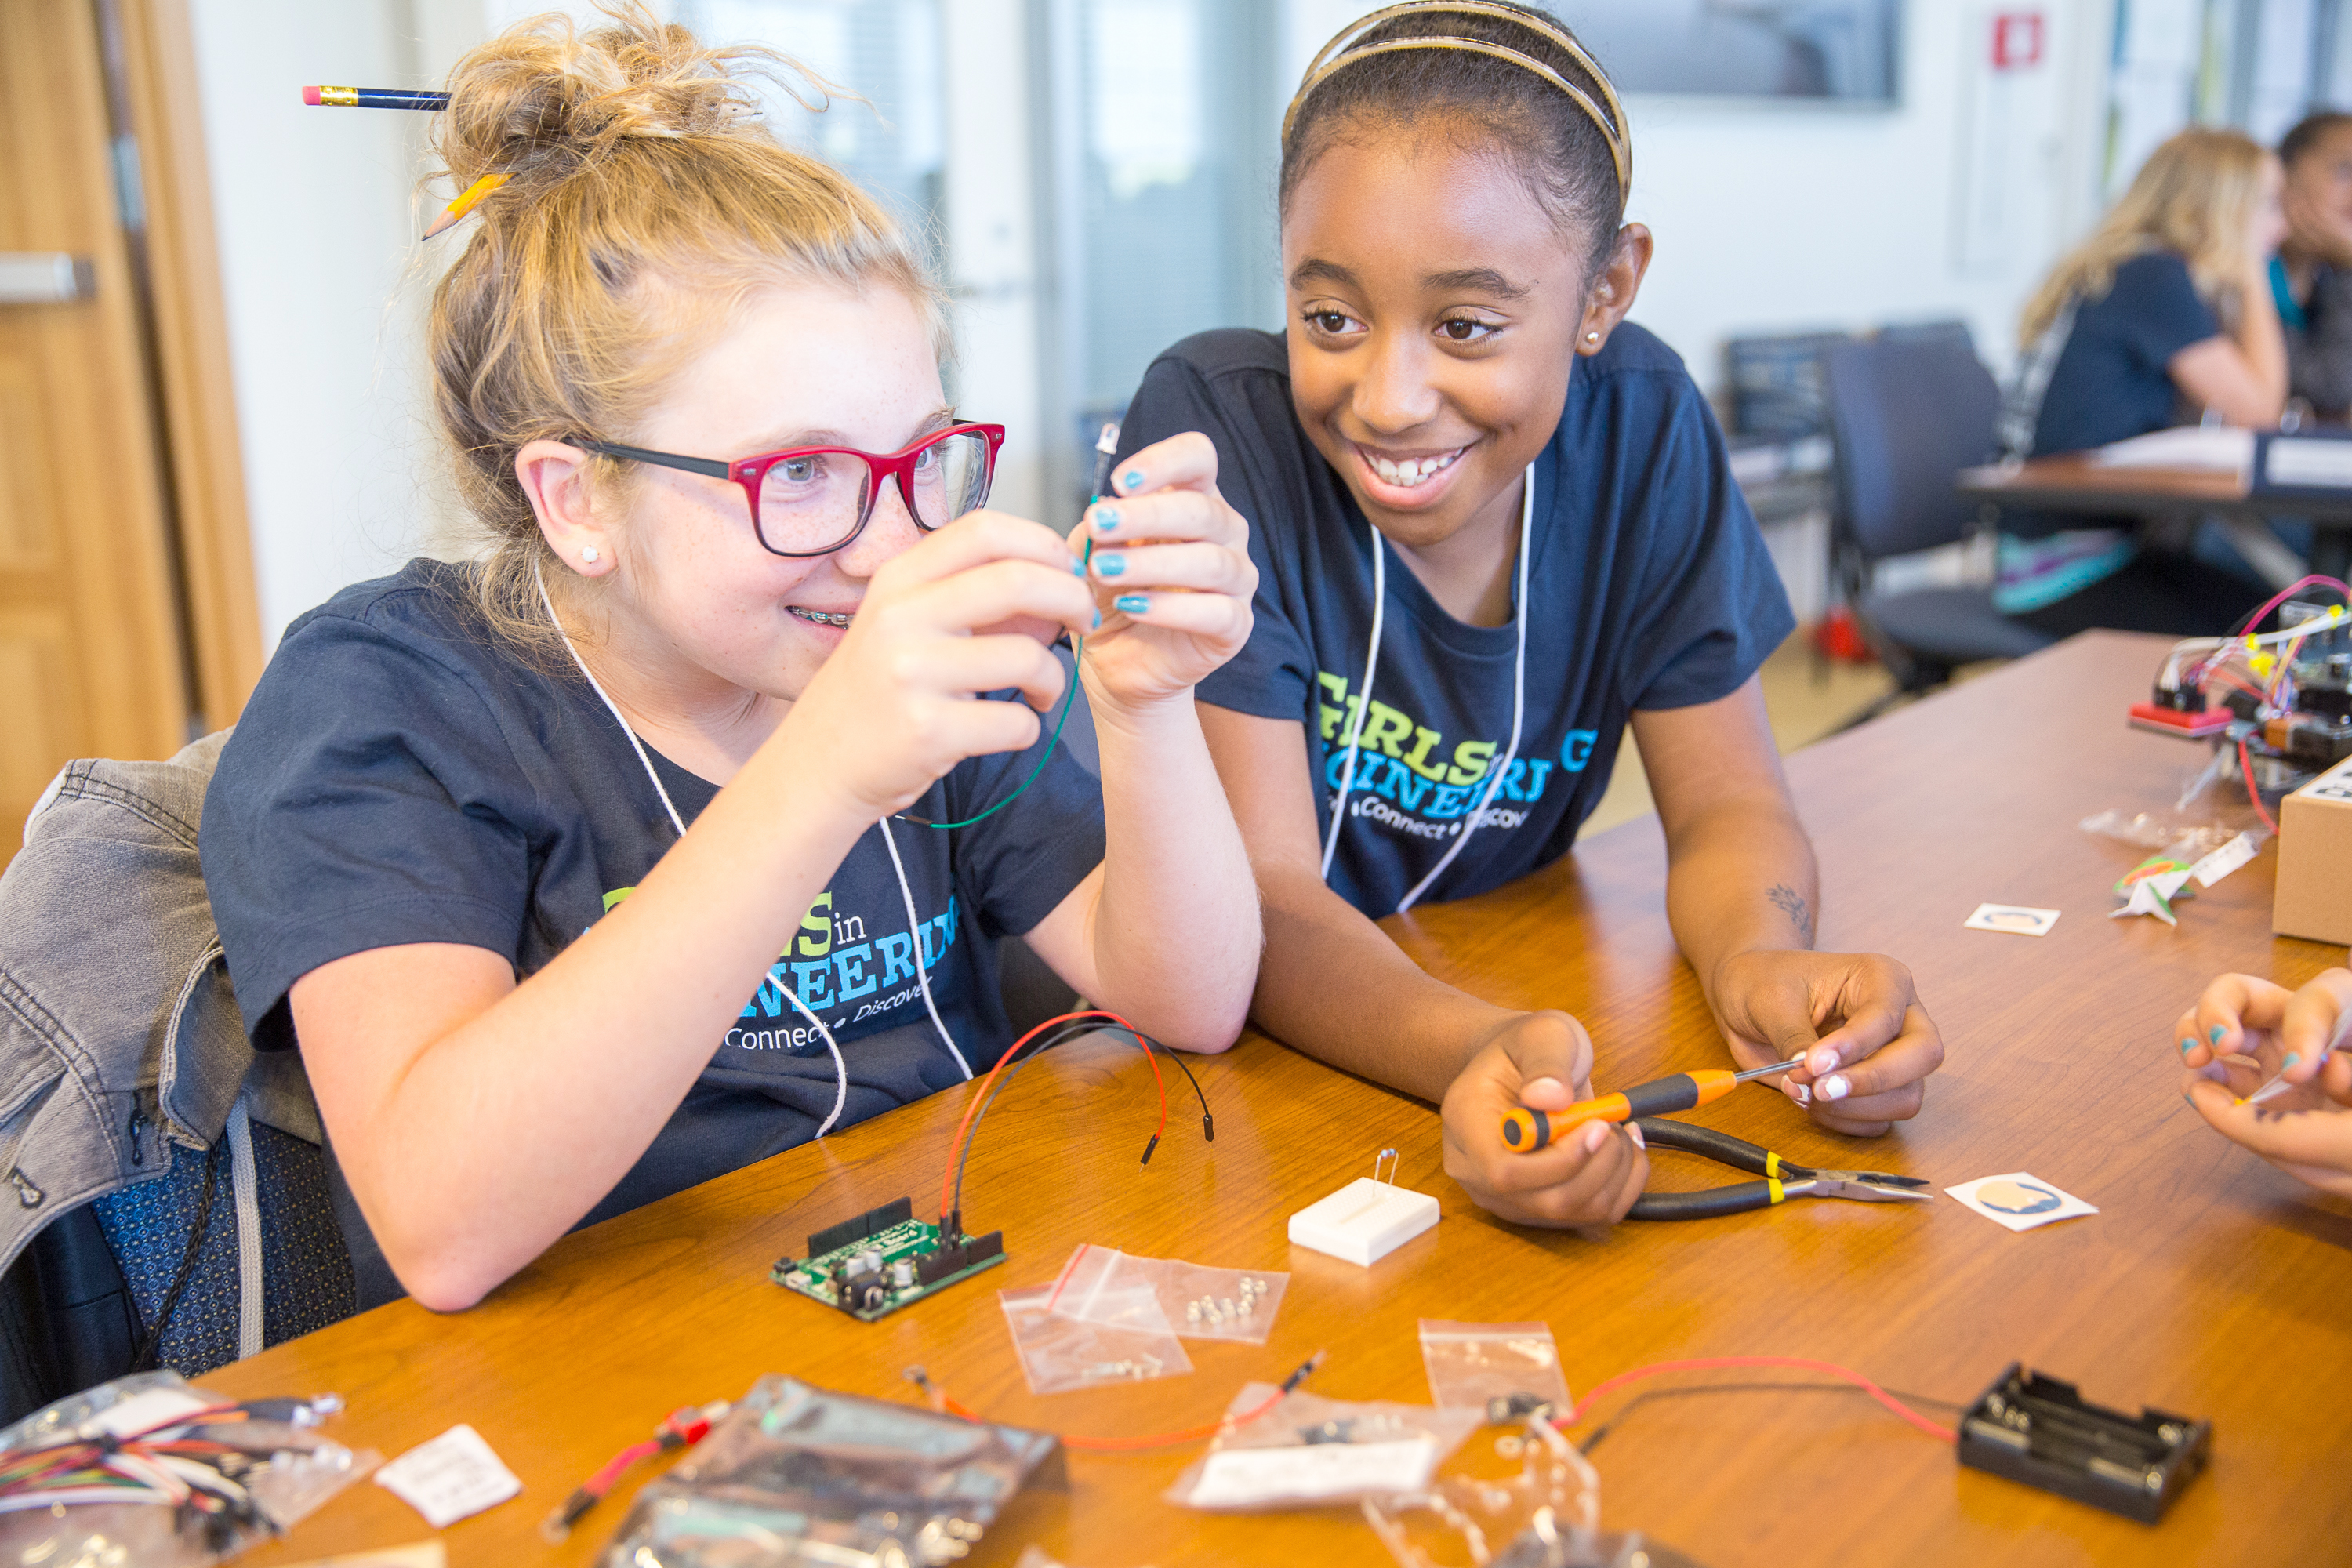 Berkeley Girls in Engineering participants building a robot